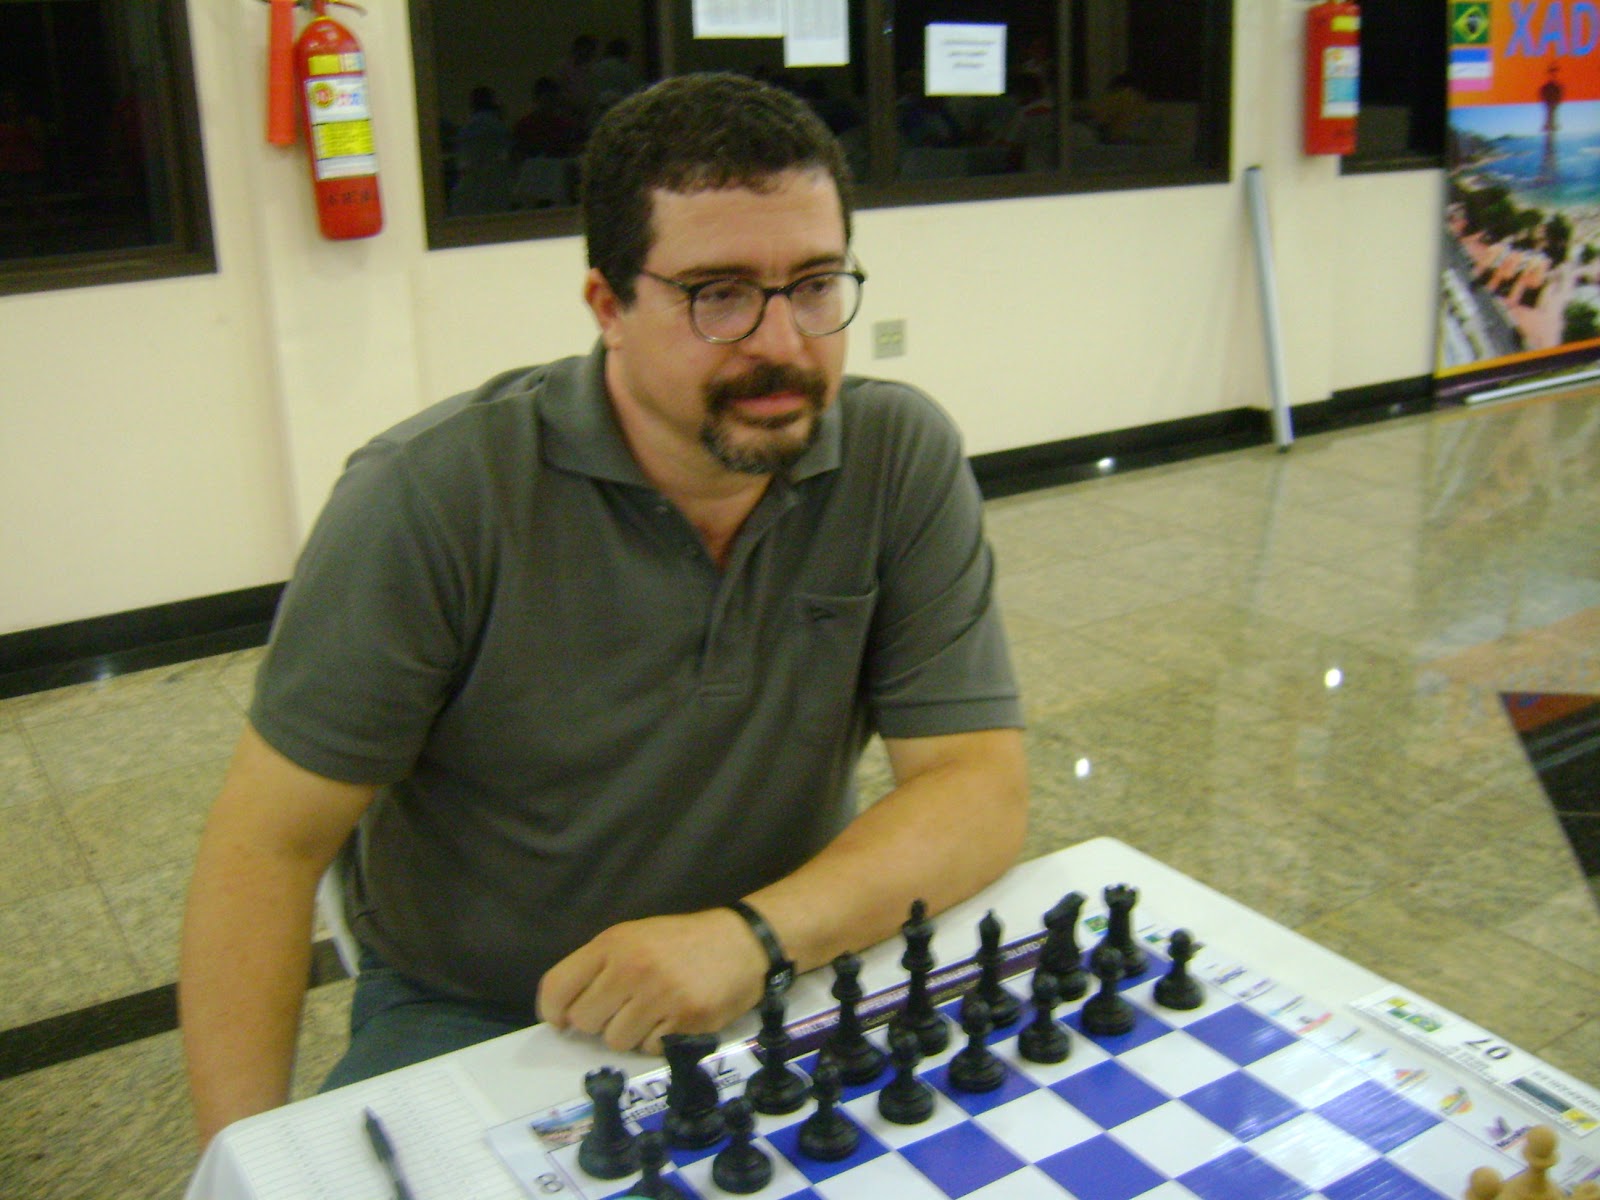 Grande Mestre Brasileiro Krikor enfrenta vários ao mesmo tempo